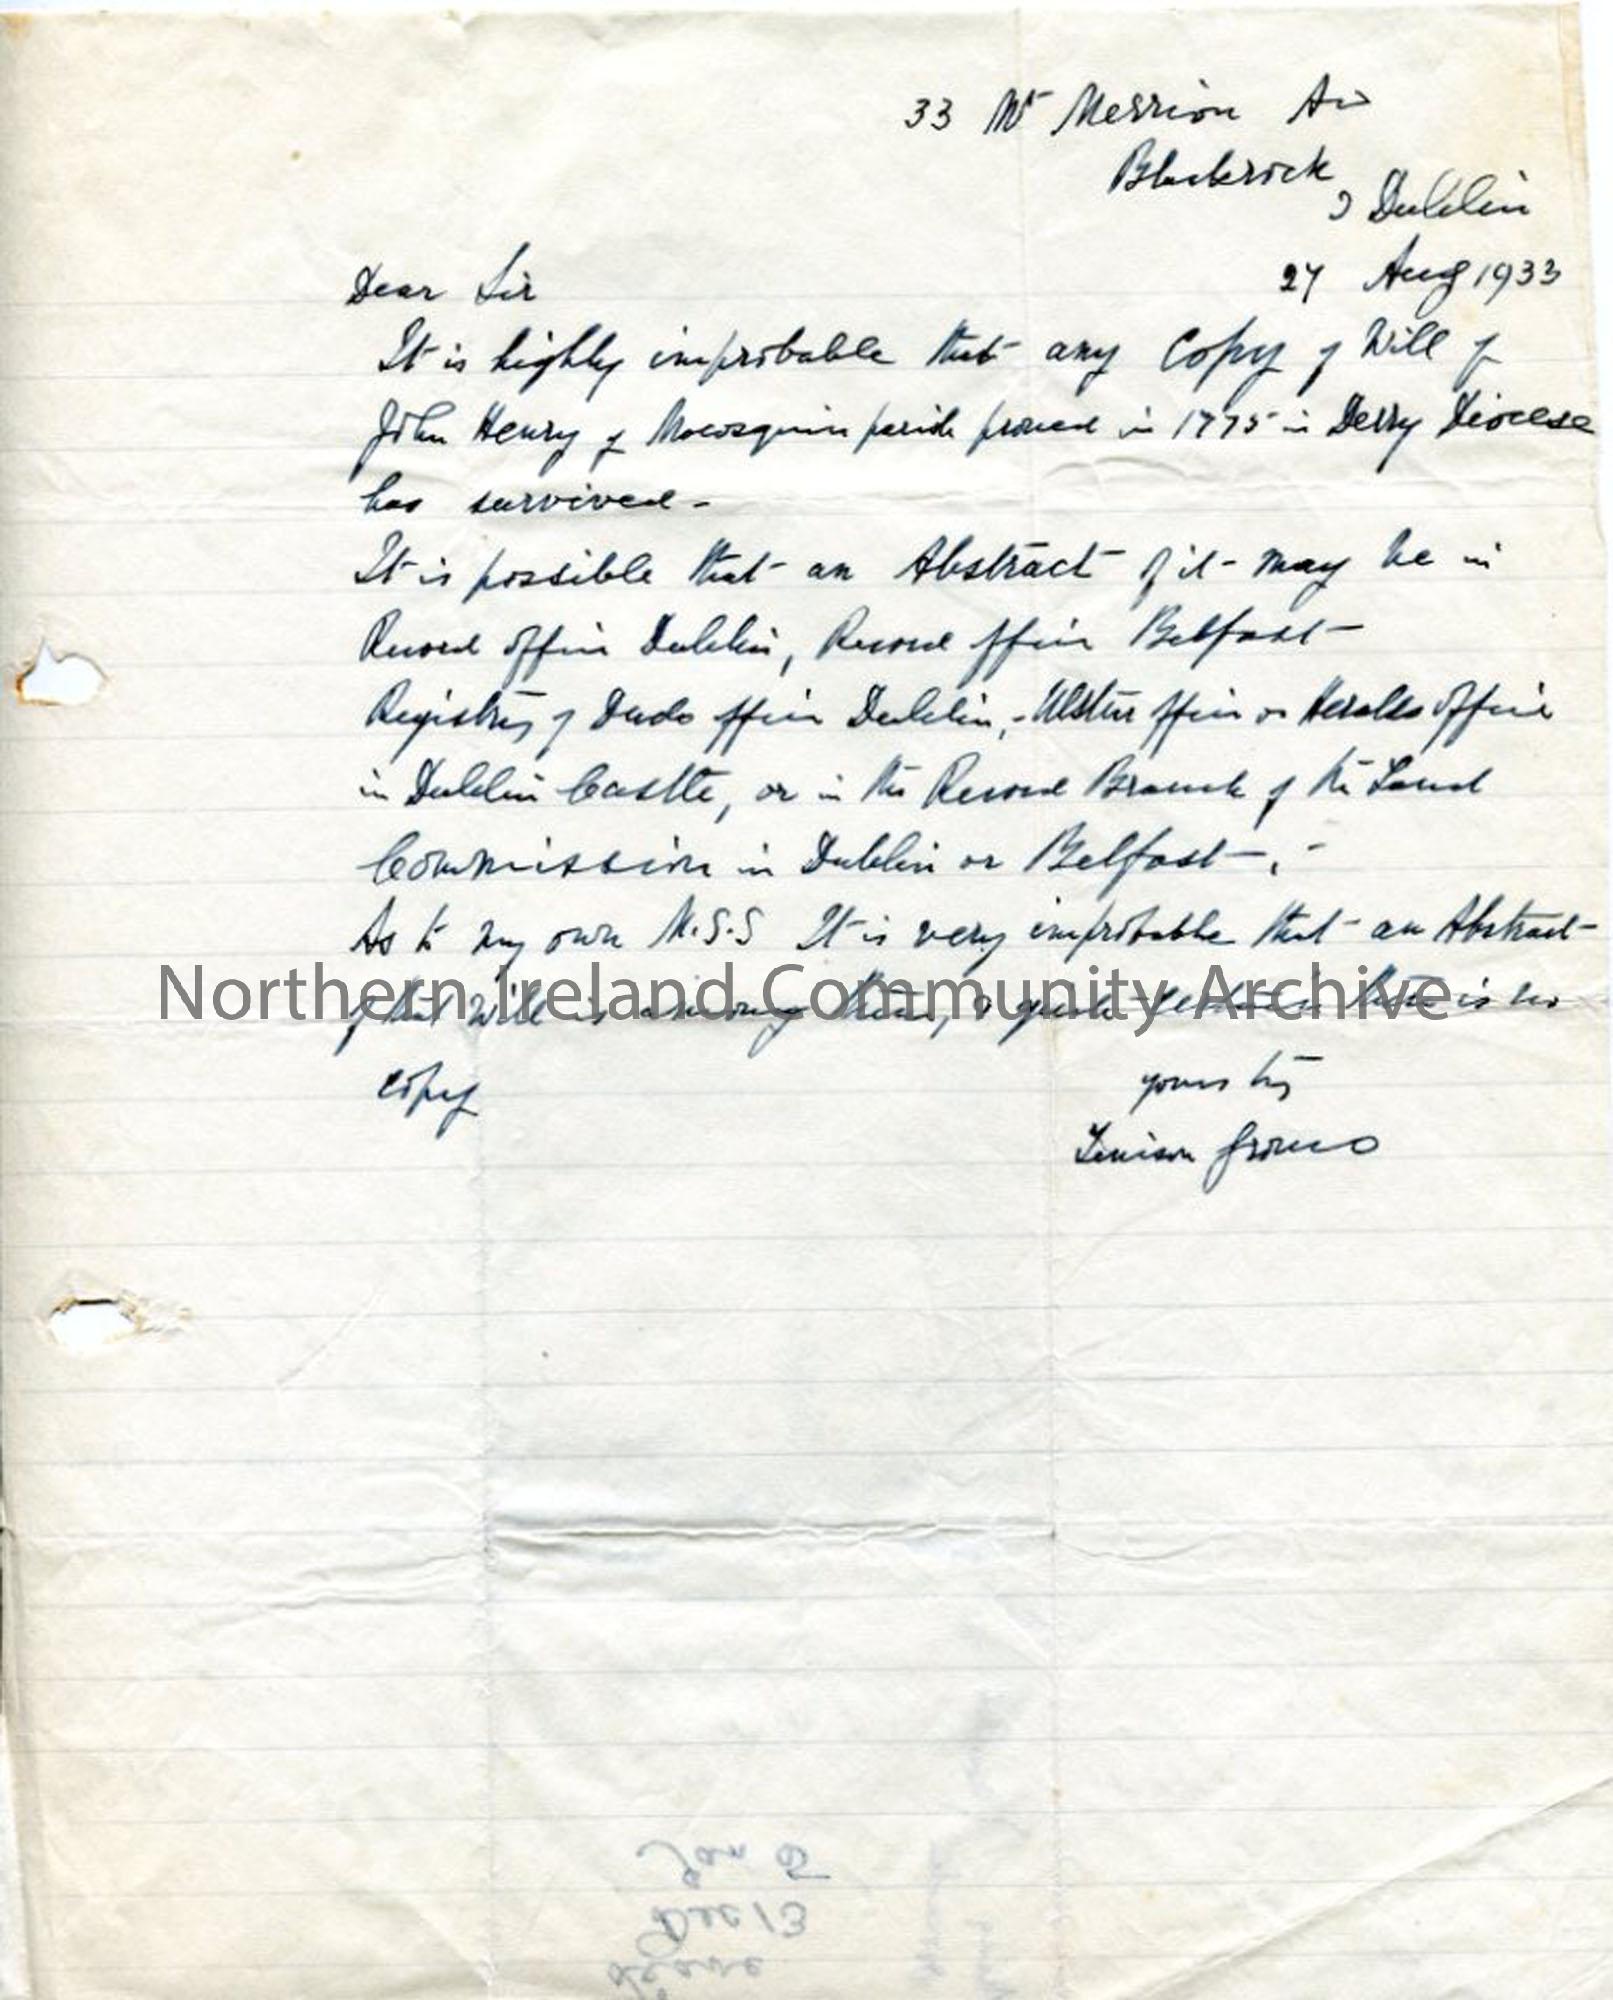 Letter from Tenison Groves, 27.8.1933